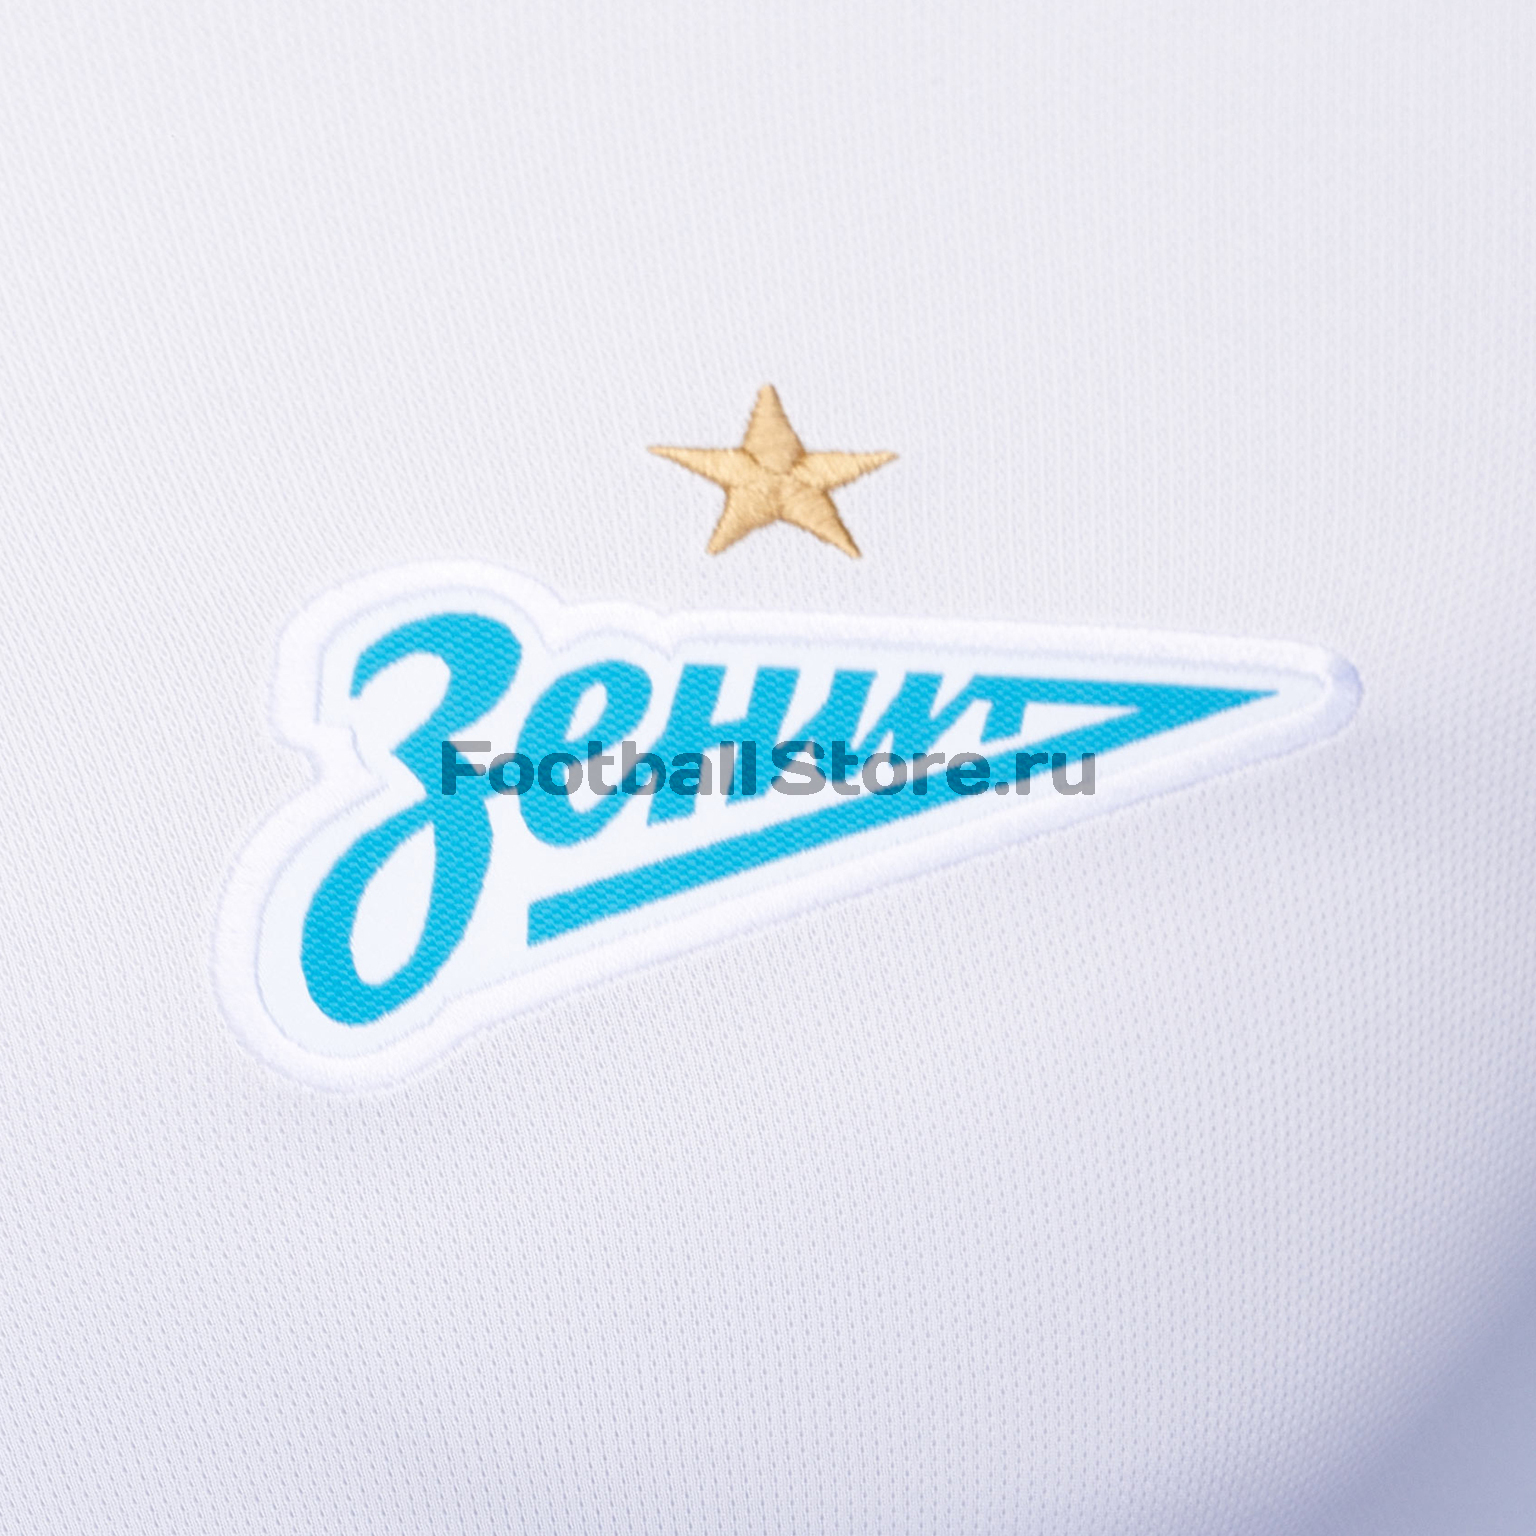 Футболка игровая выездная Nike Zenit сезон 2018/19